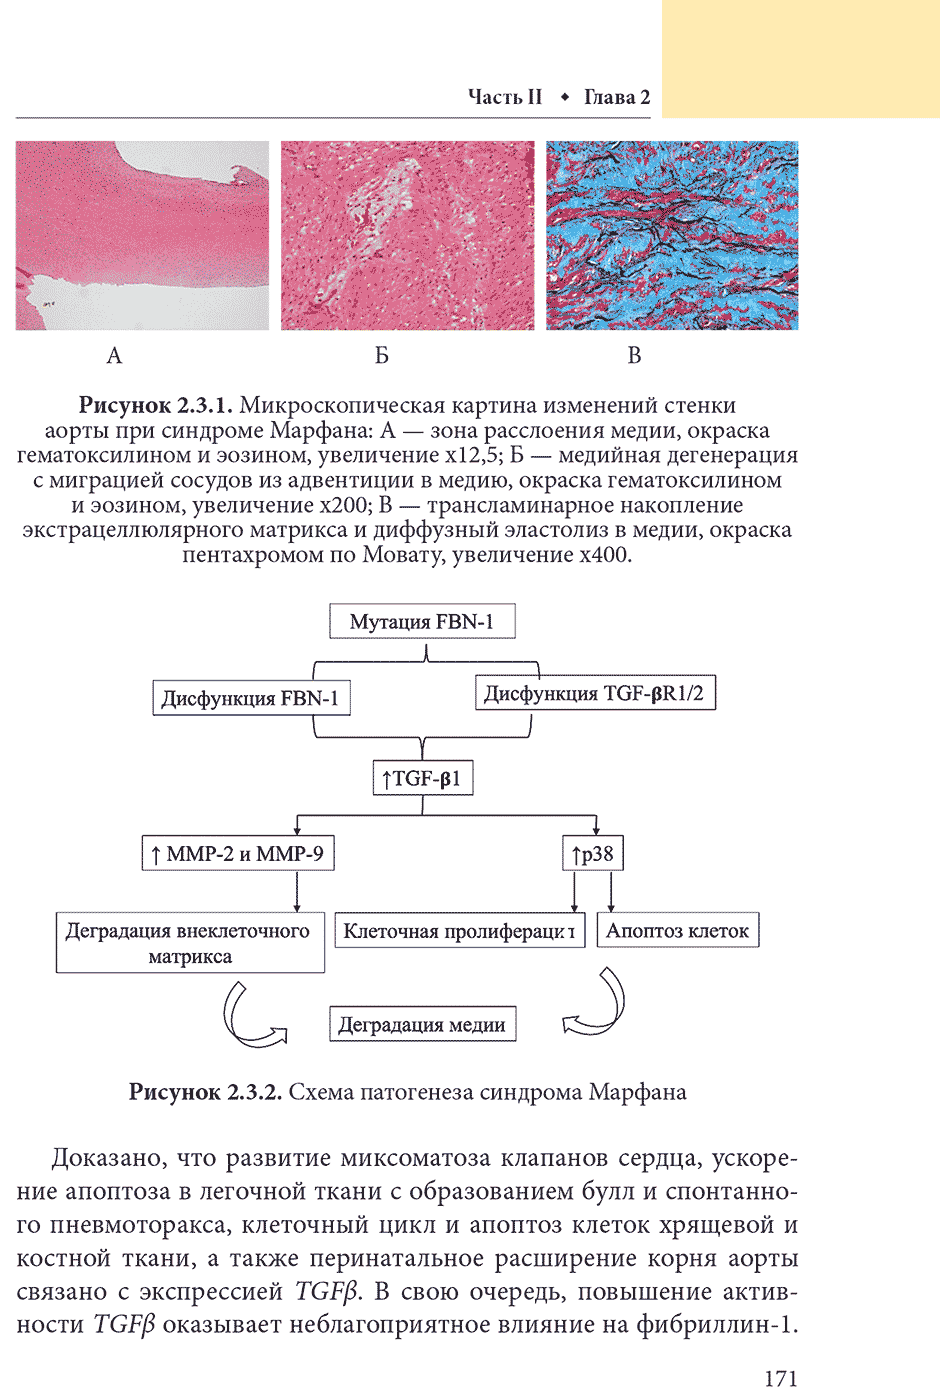 Рисунок 2.3.2. Схема патогенеза синдрома Марфана